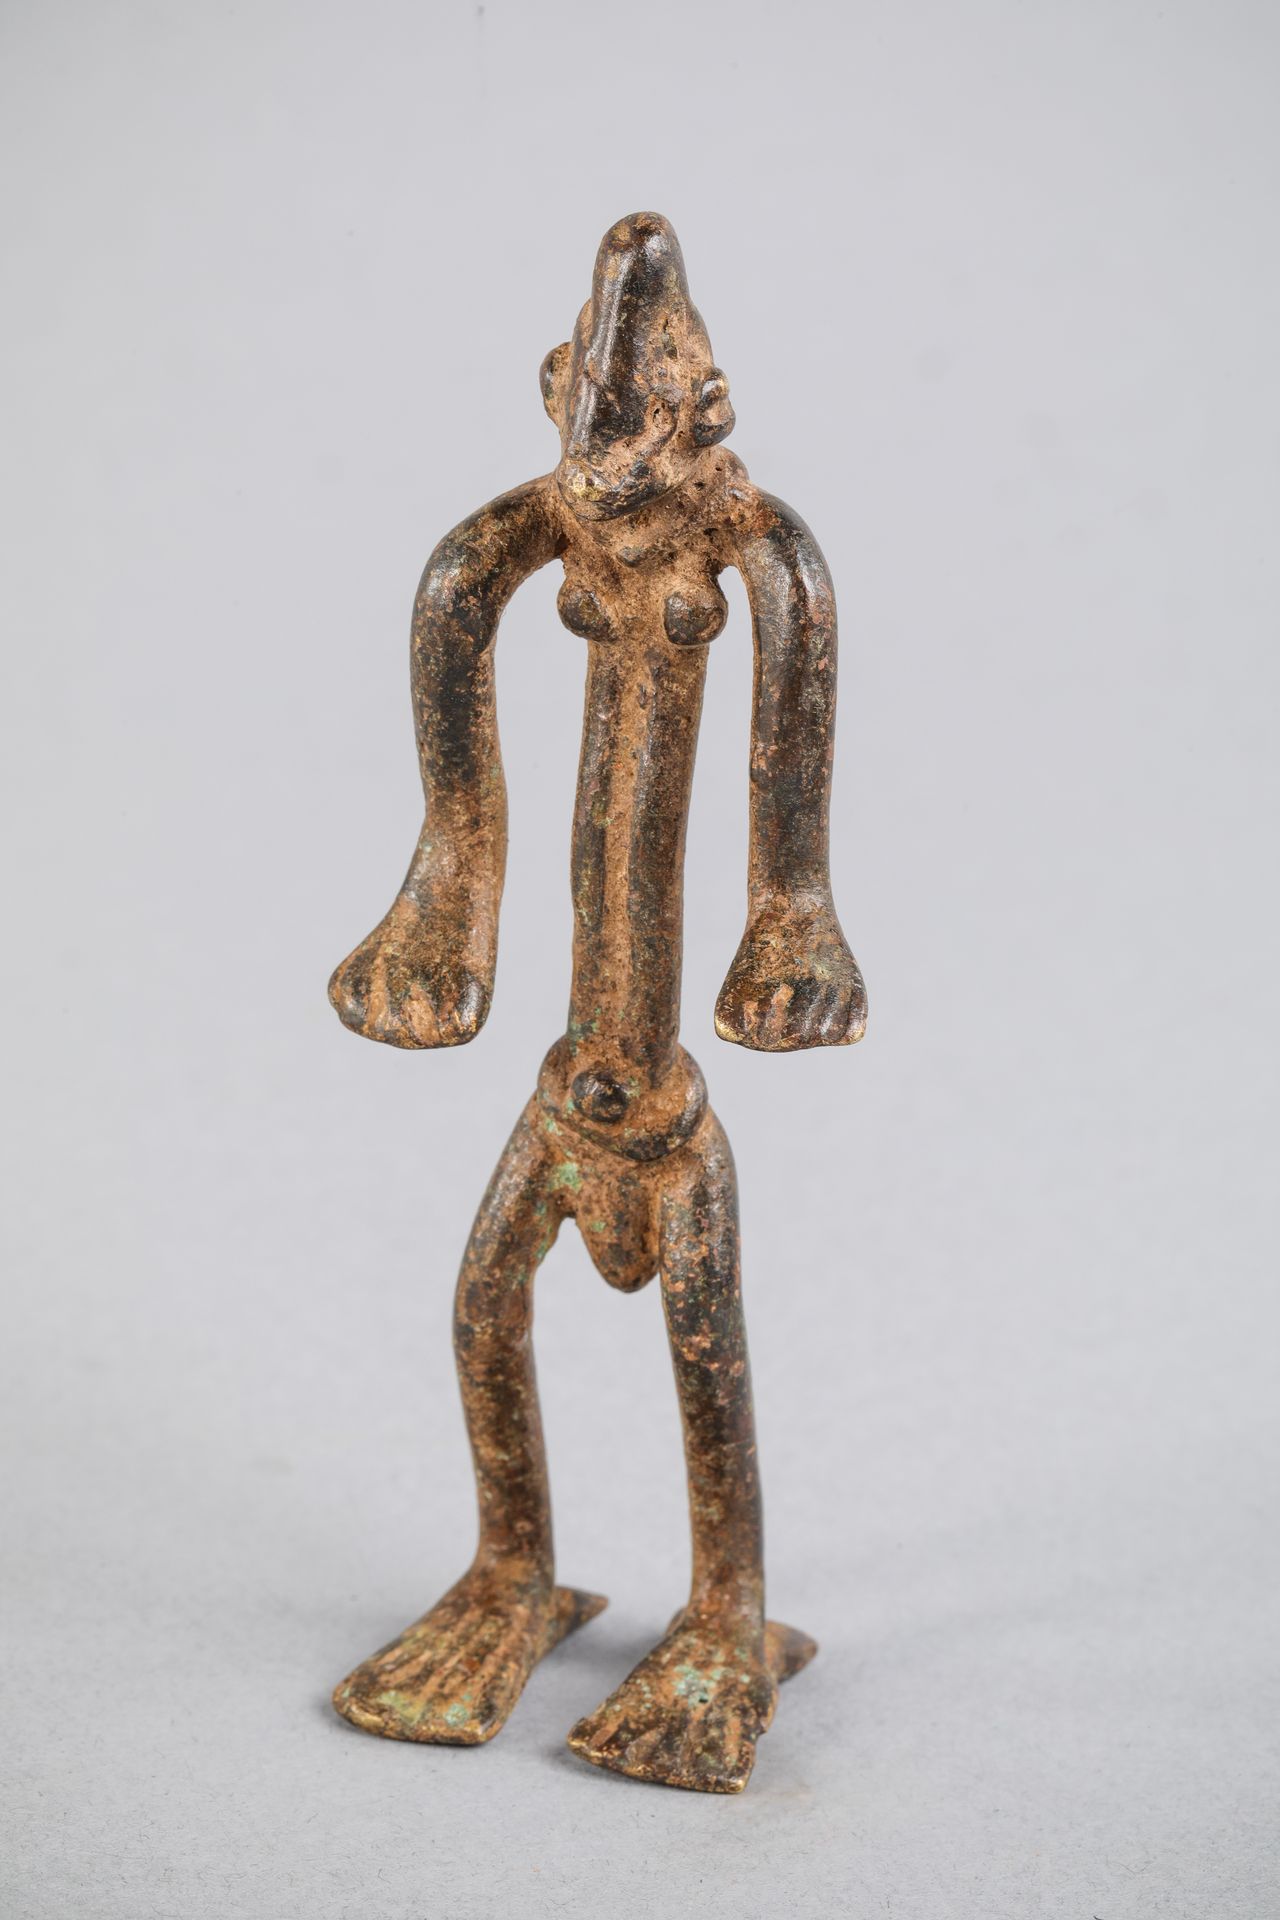 Null Personnage votif Sénoufo, Côte d'Ivoire. Bronze. H 11,4 cm.